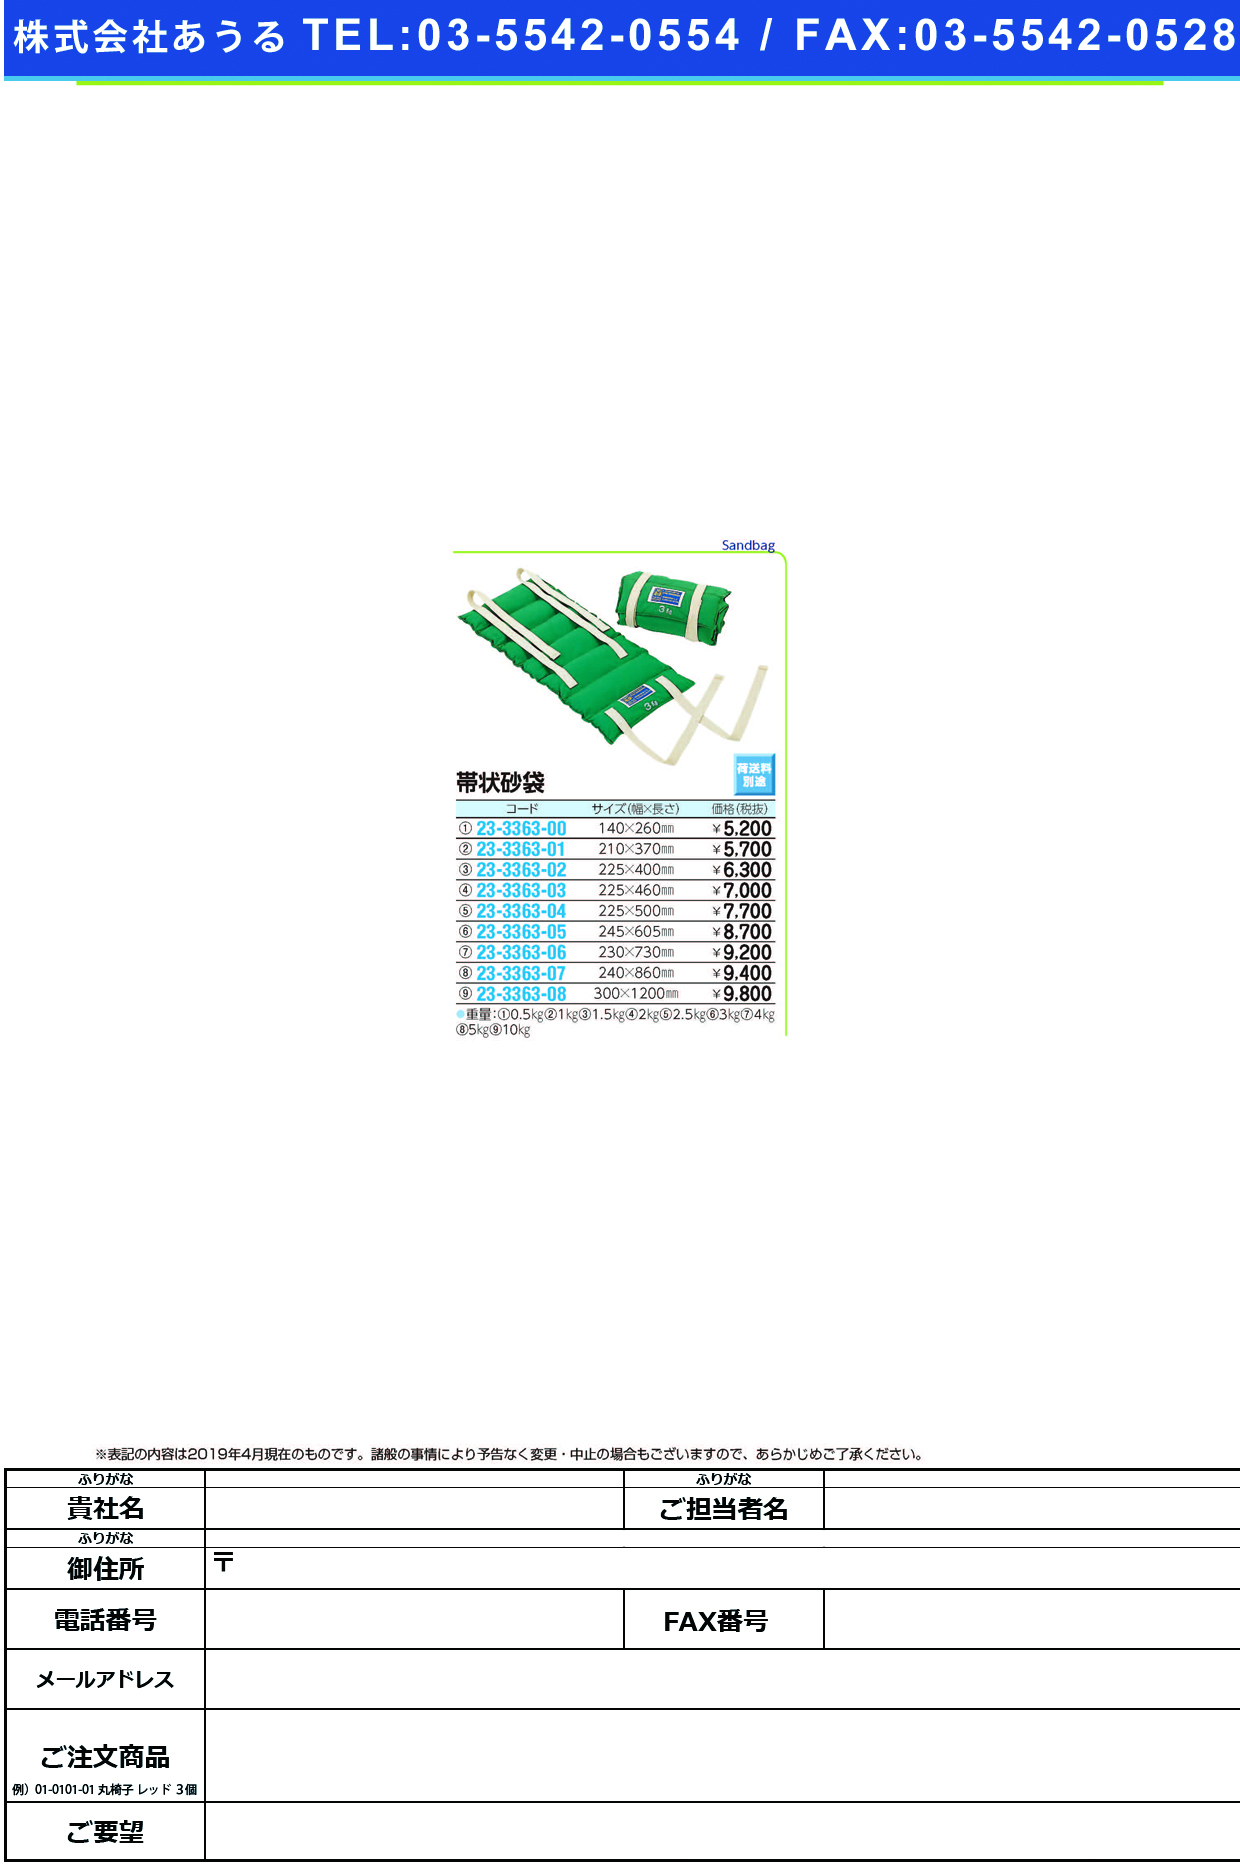 (23-3363-07)帯状砂袋 R-526(5.0KG) ｵﾋﾞｼﾞｮｳｽﾅﾌﾞｸﾛ【1個単位】【2019年カタログ商品】